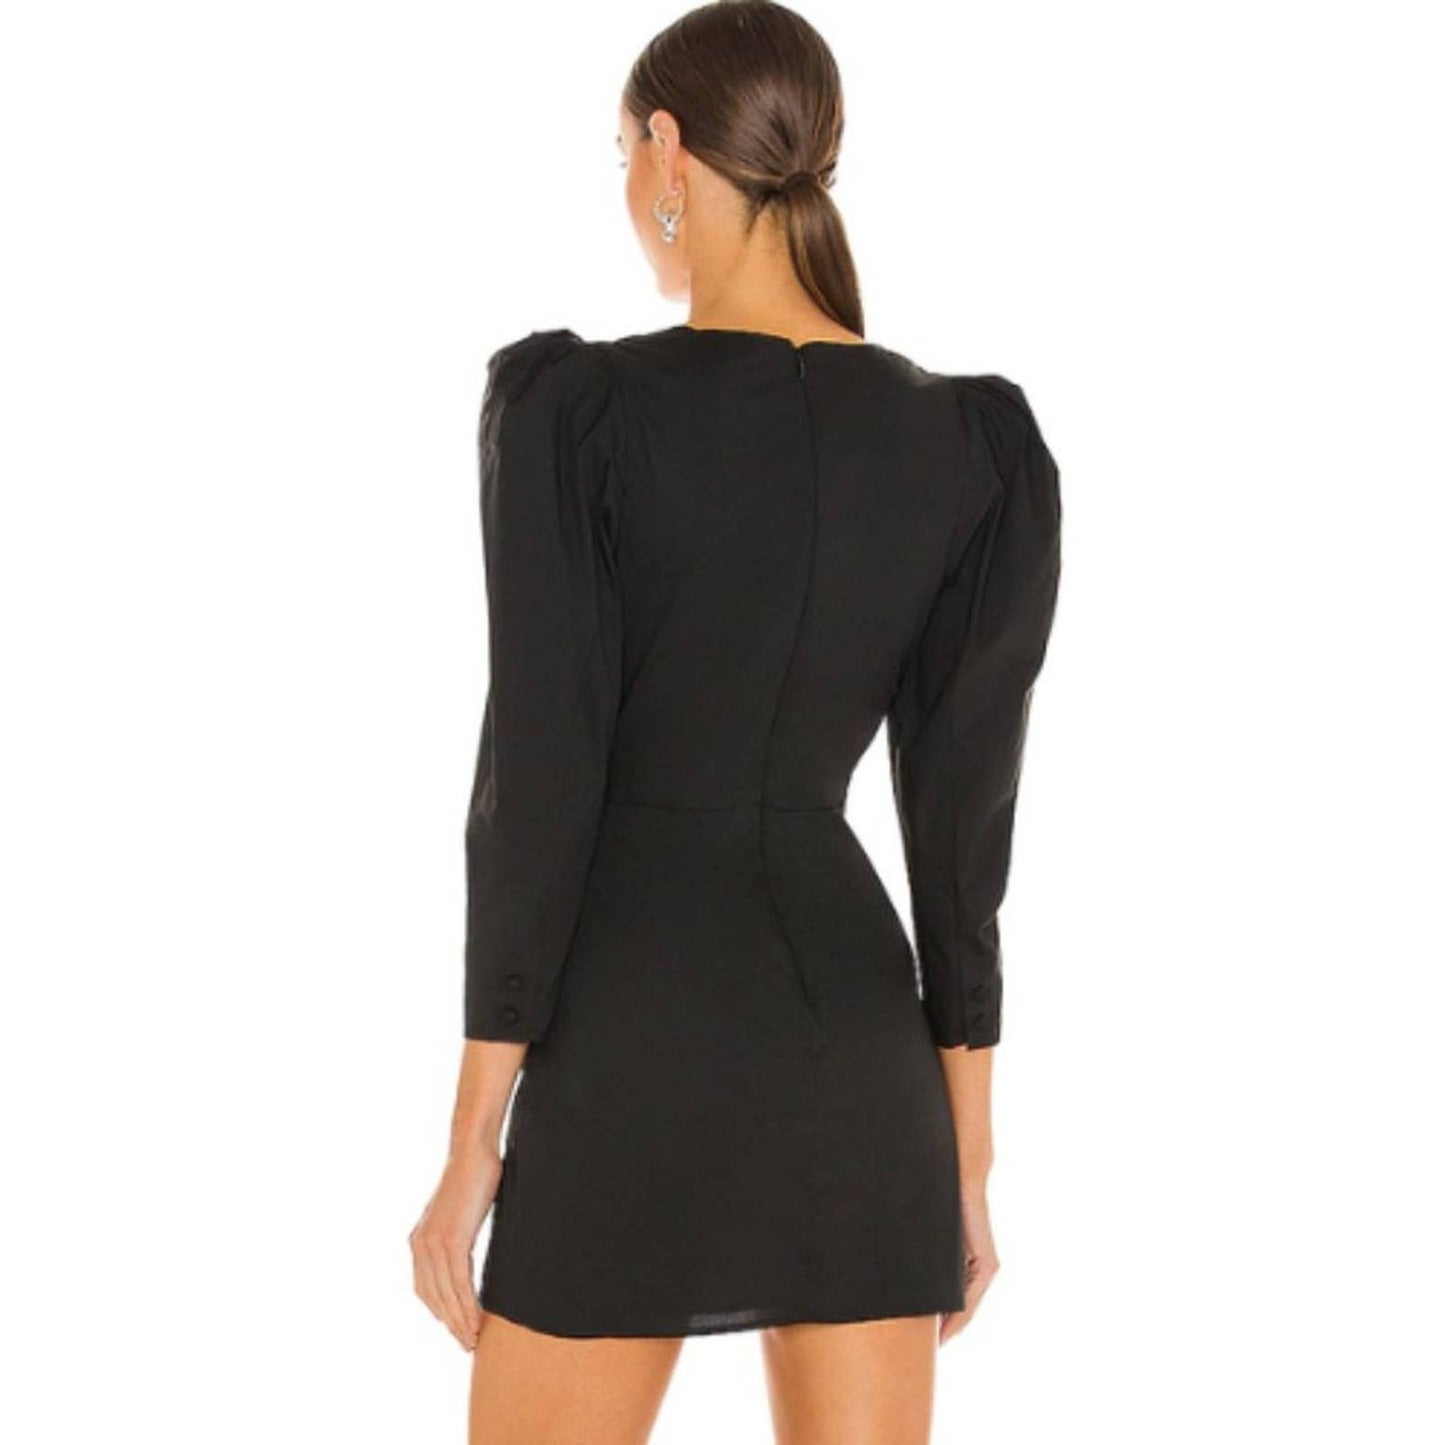 NBD Malone Mini Dress in Black NWT Size XS